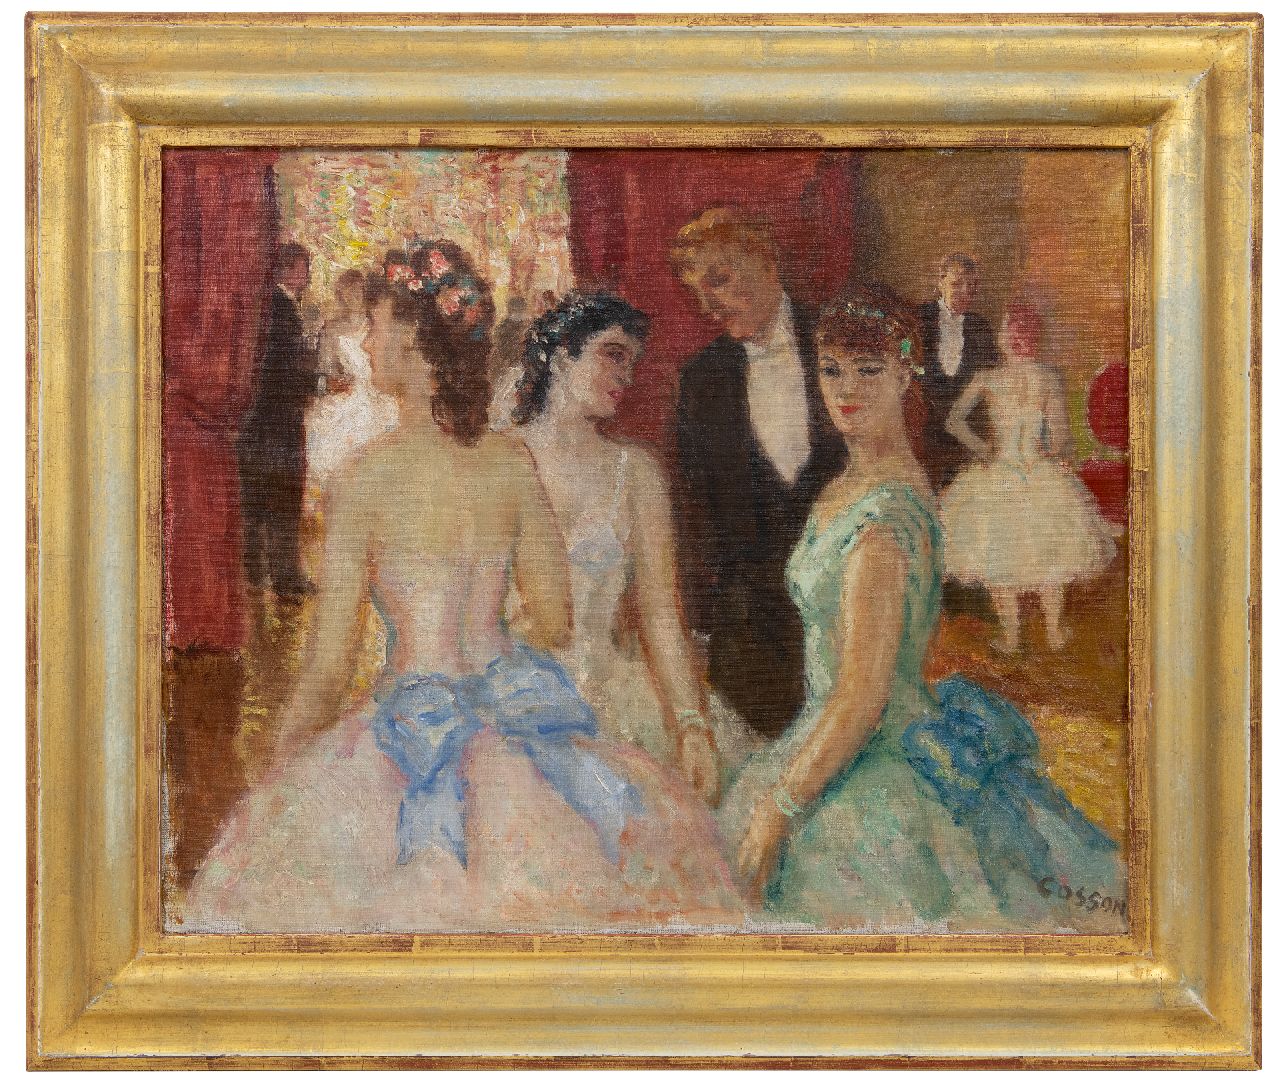 Cosson J.L.M.  | Jean Louis 'Marcel' Cosson | Schilderijen te koop aangeboden | Na de balletvoorstelling, olieverf op doek 50,2 x 61,0 cm, gesigneerd rechtsonder